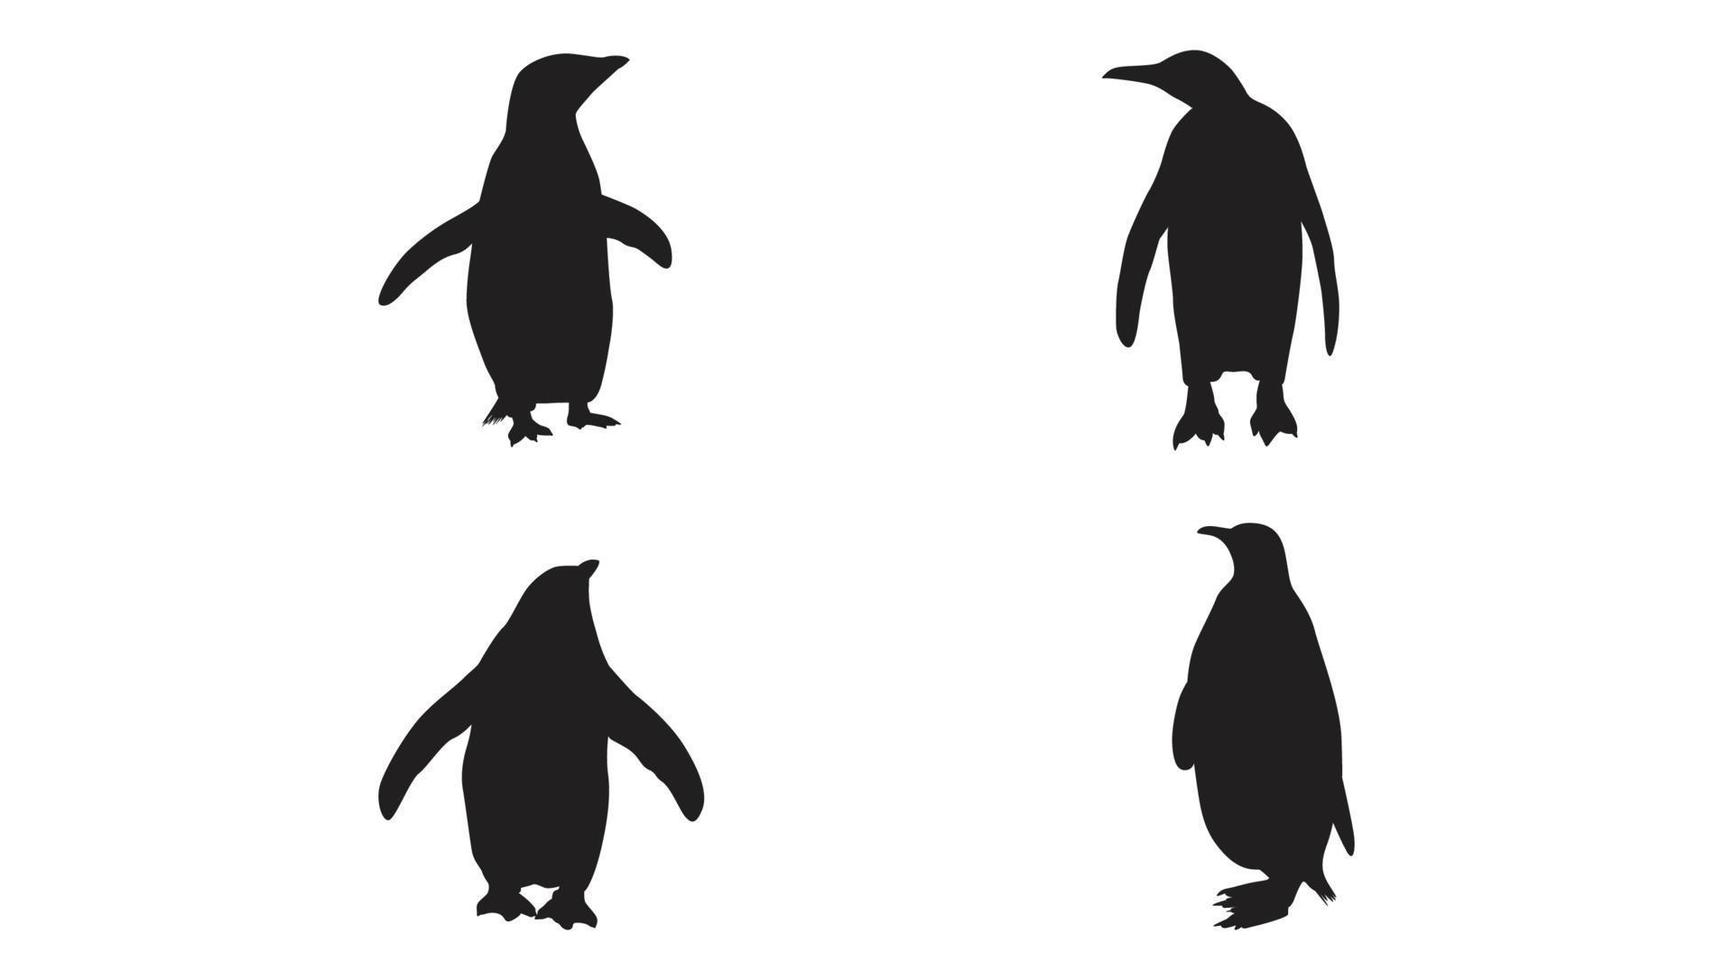 coleção de silhueta de pinguim em diferentes poses vetor grátis